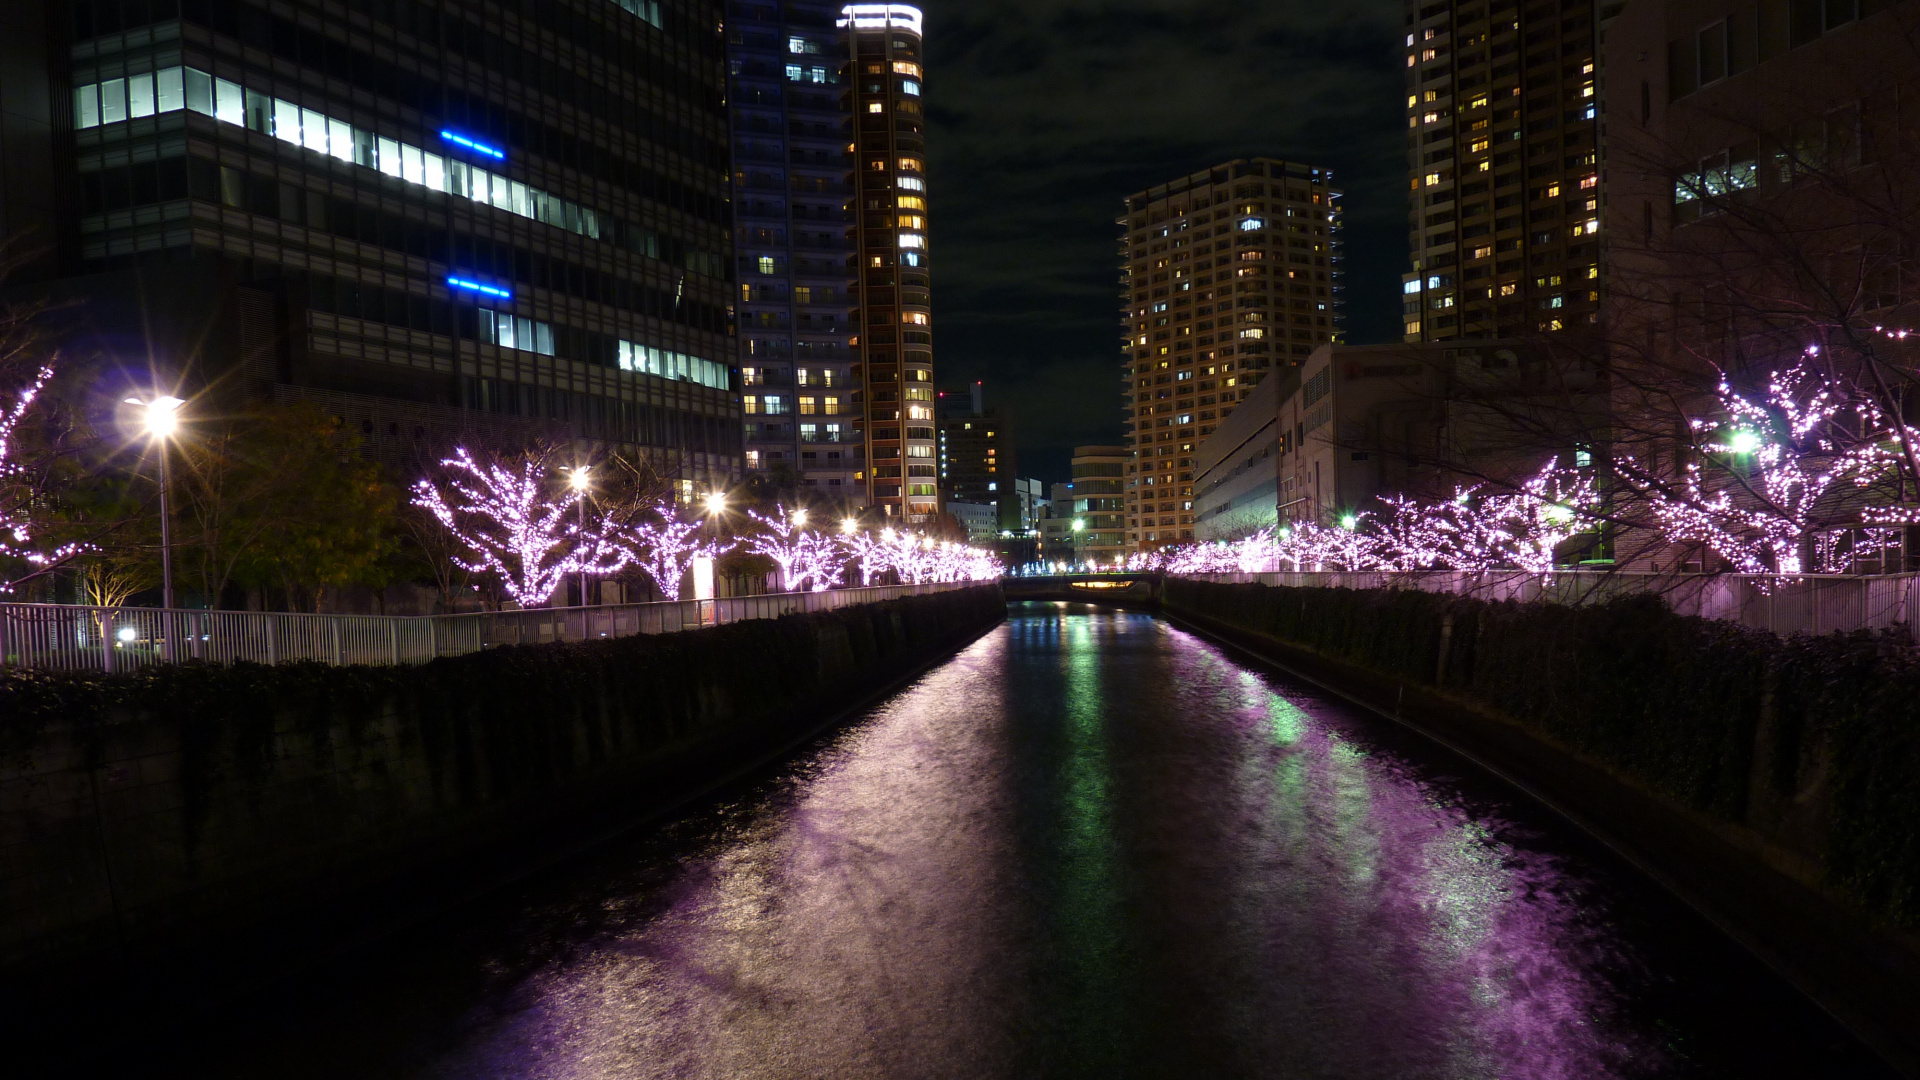 Lumières Violettes Sur le Pont Pendant la Nuit. Wallpaper in 1920x1080 Resolution